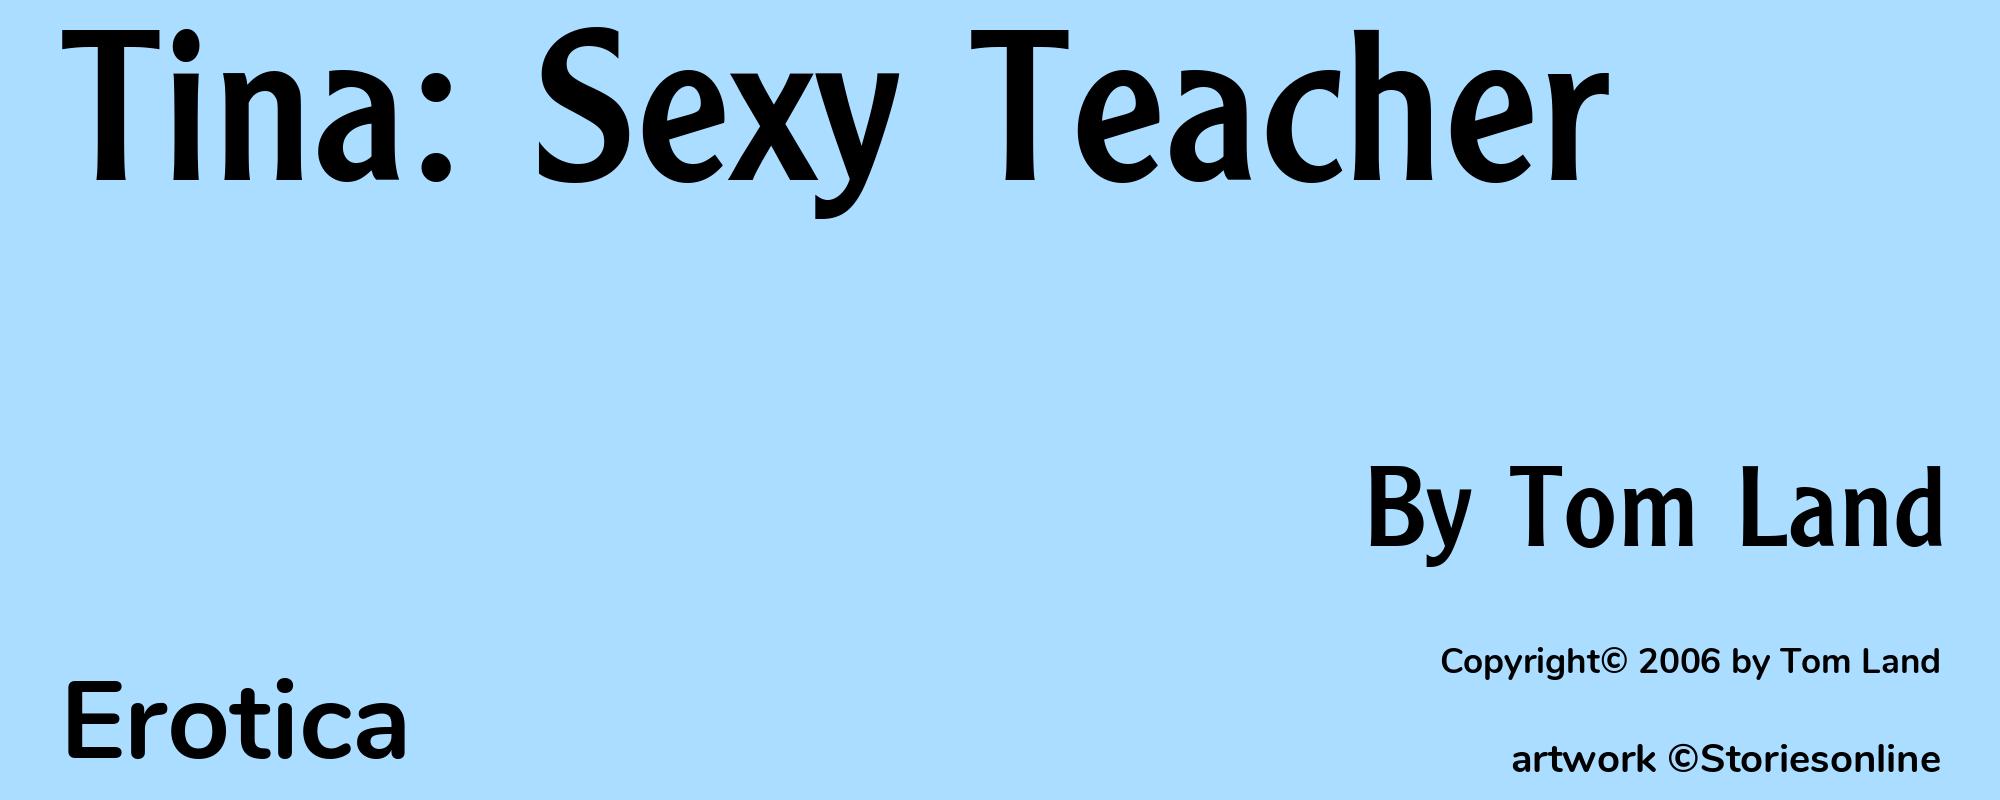 Tina: Sexy Teacher - Cover